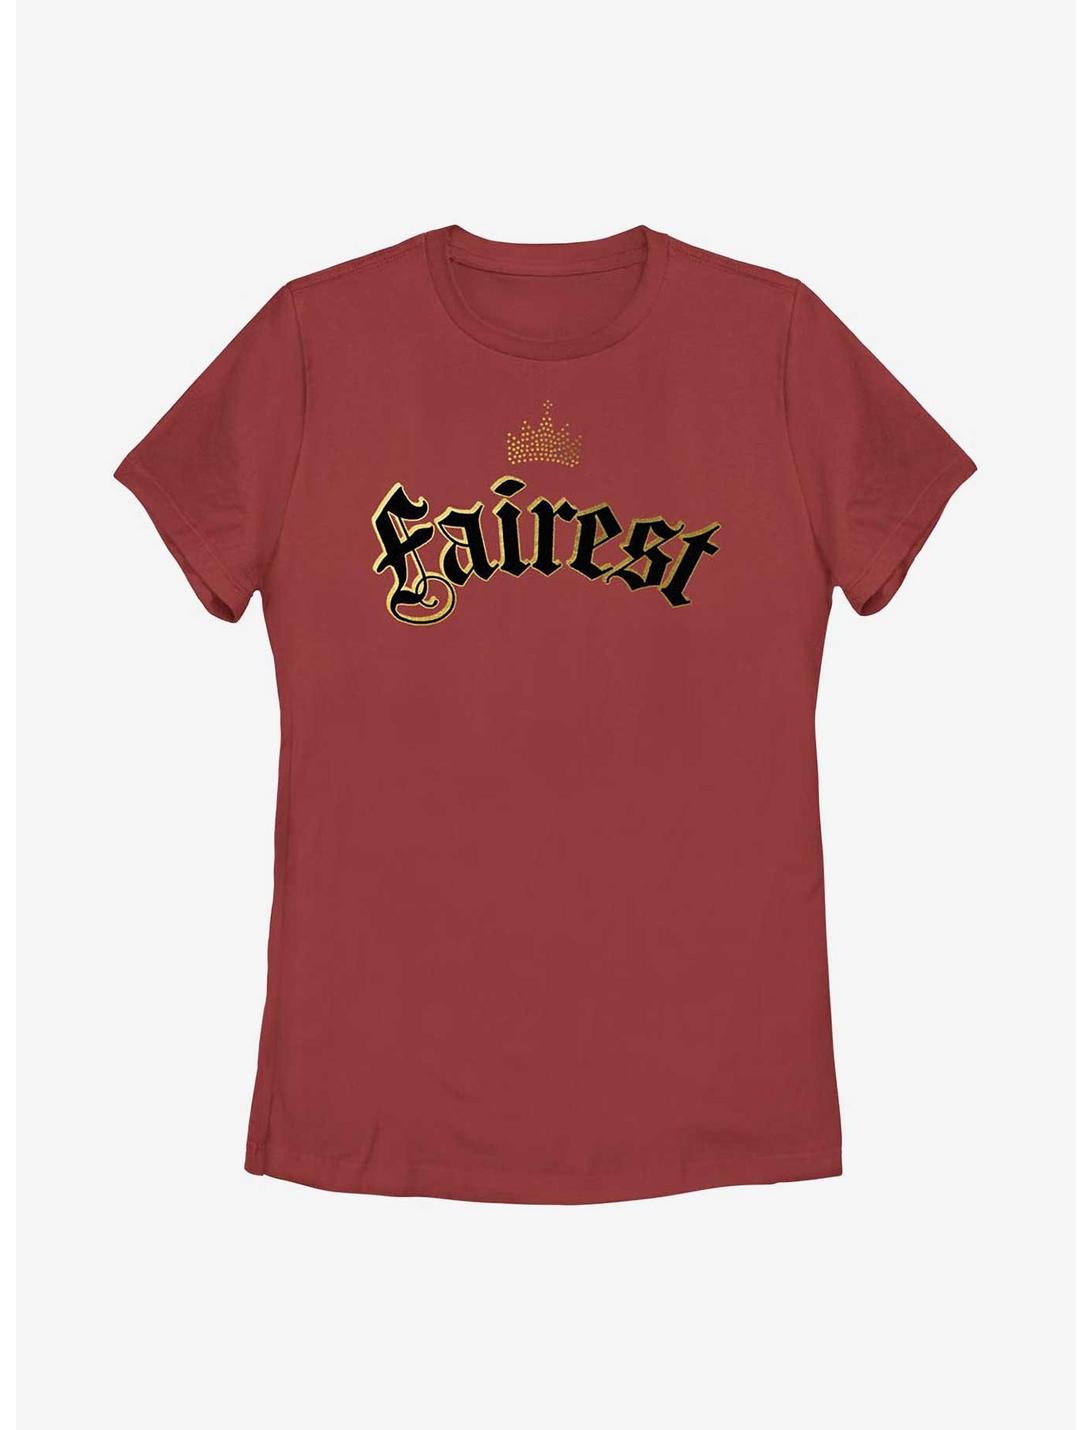 Disney Descendants Fairest Womens T-Shirt, RED, hi-res